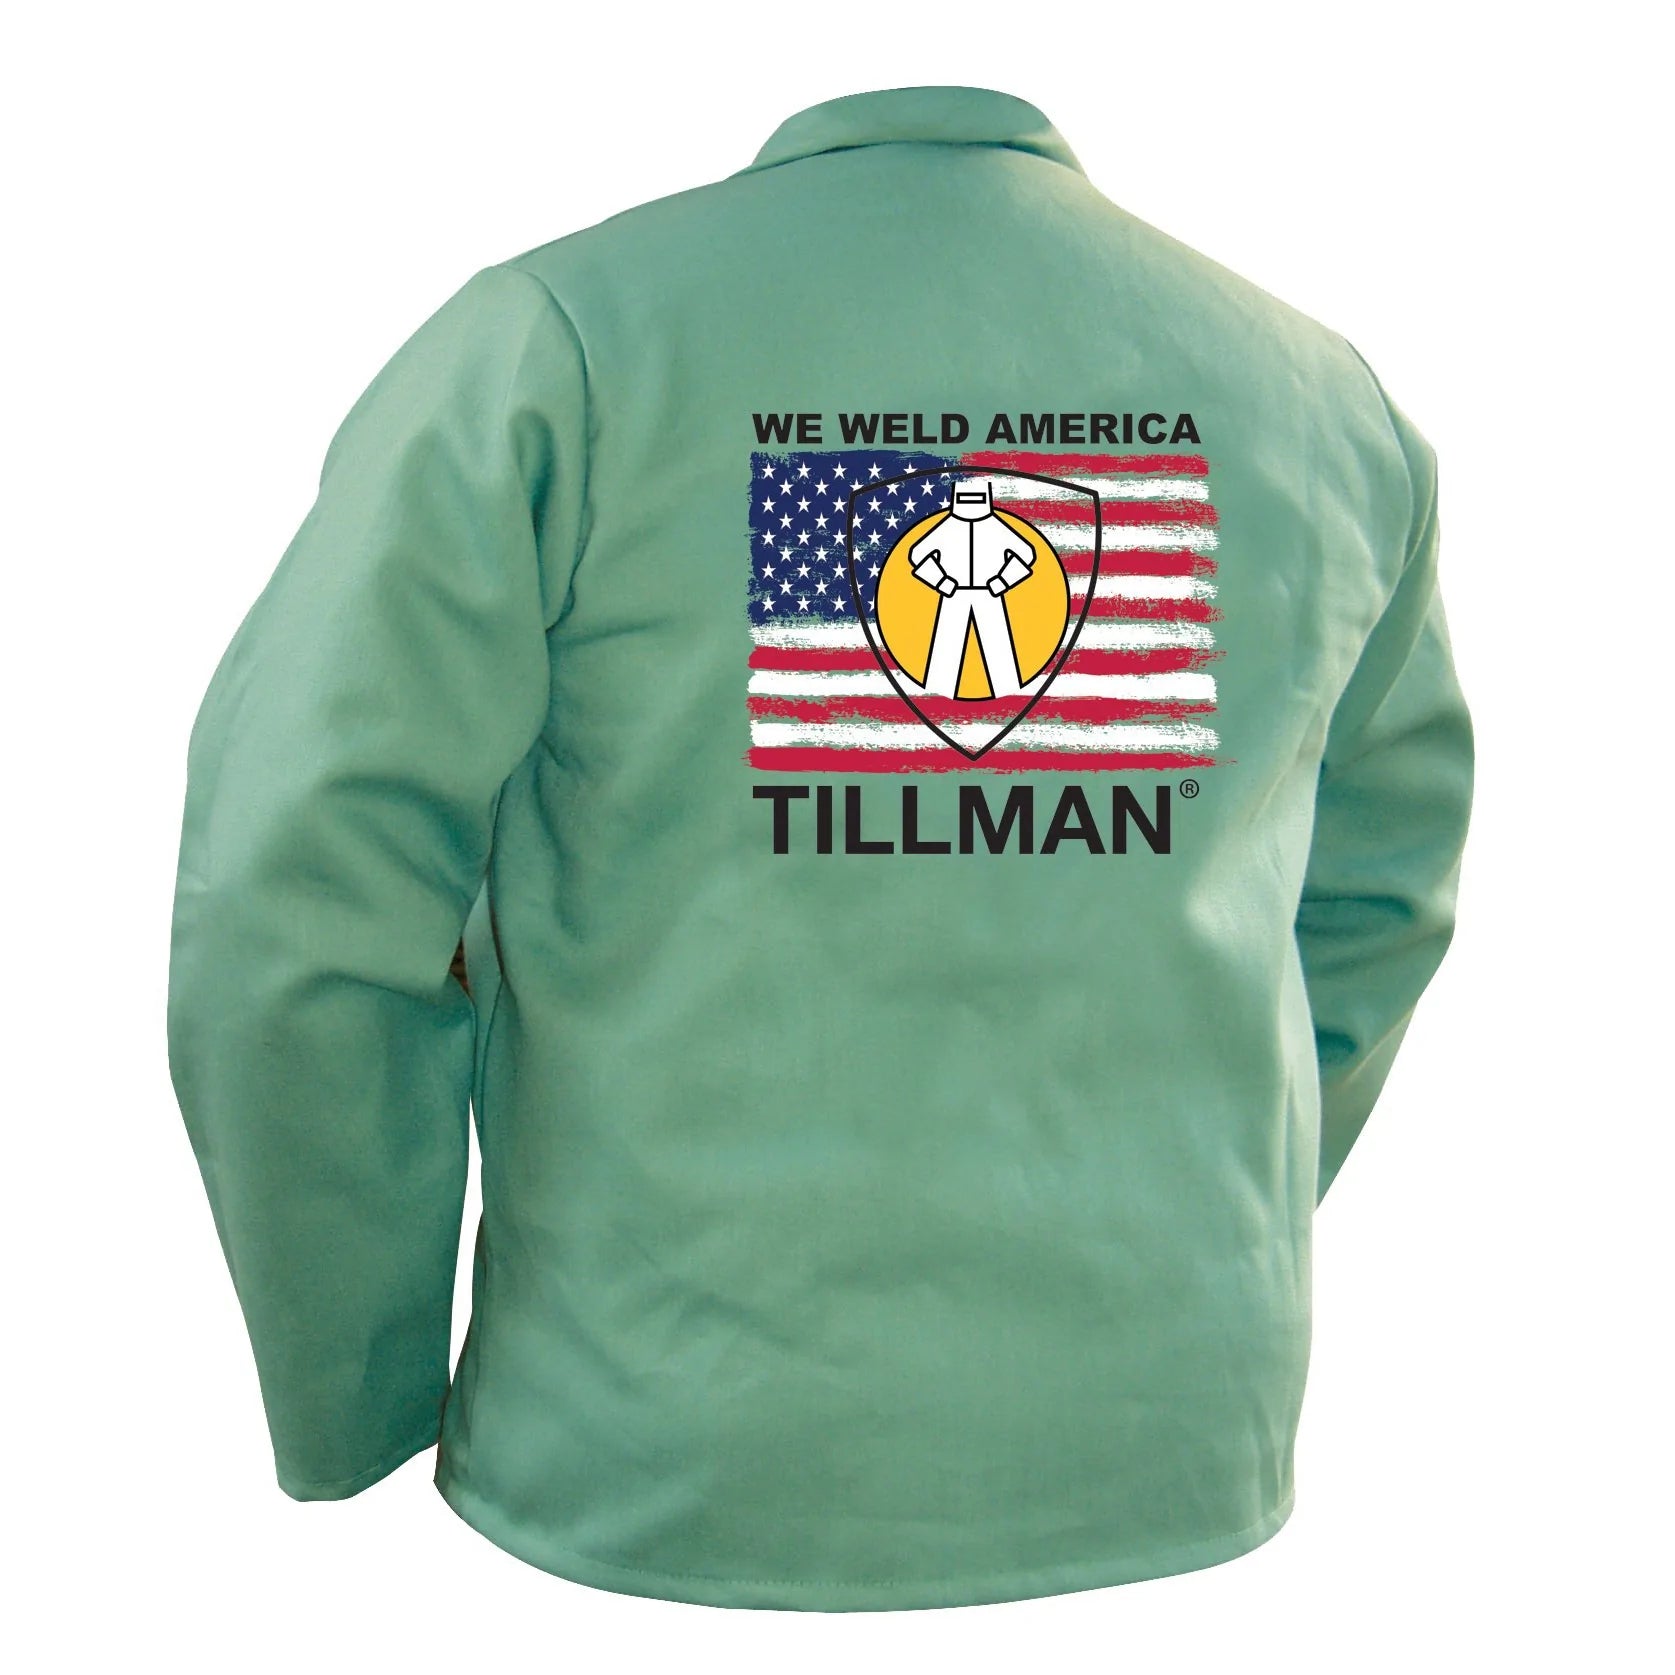 Tillman 9030 30" We Weld America Welding Jacket